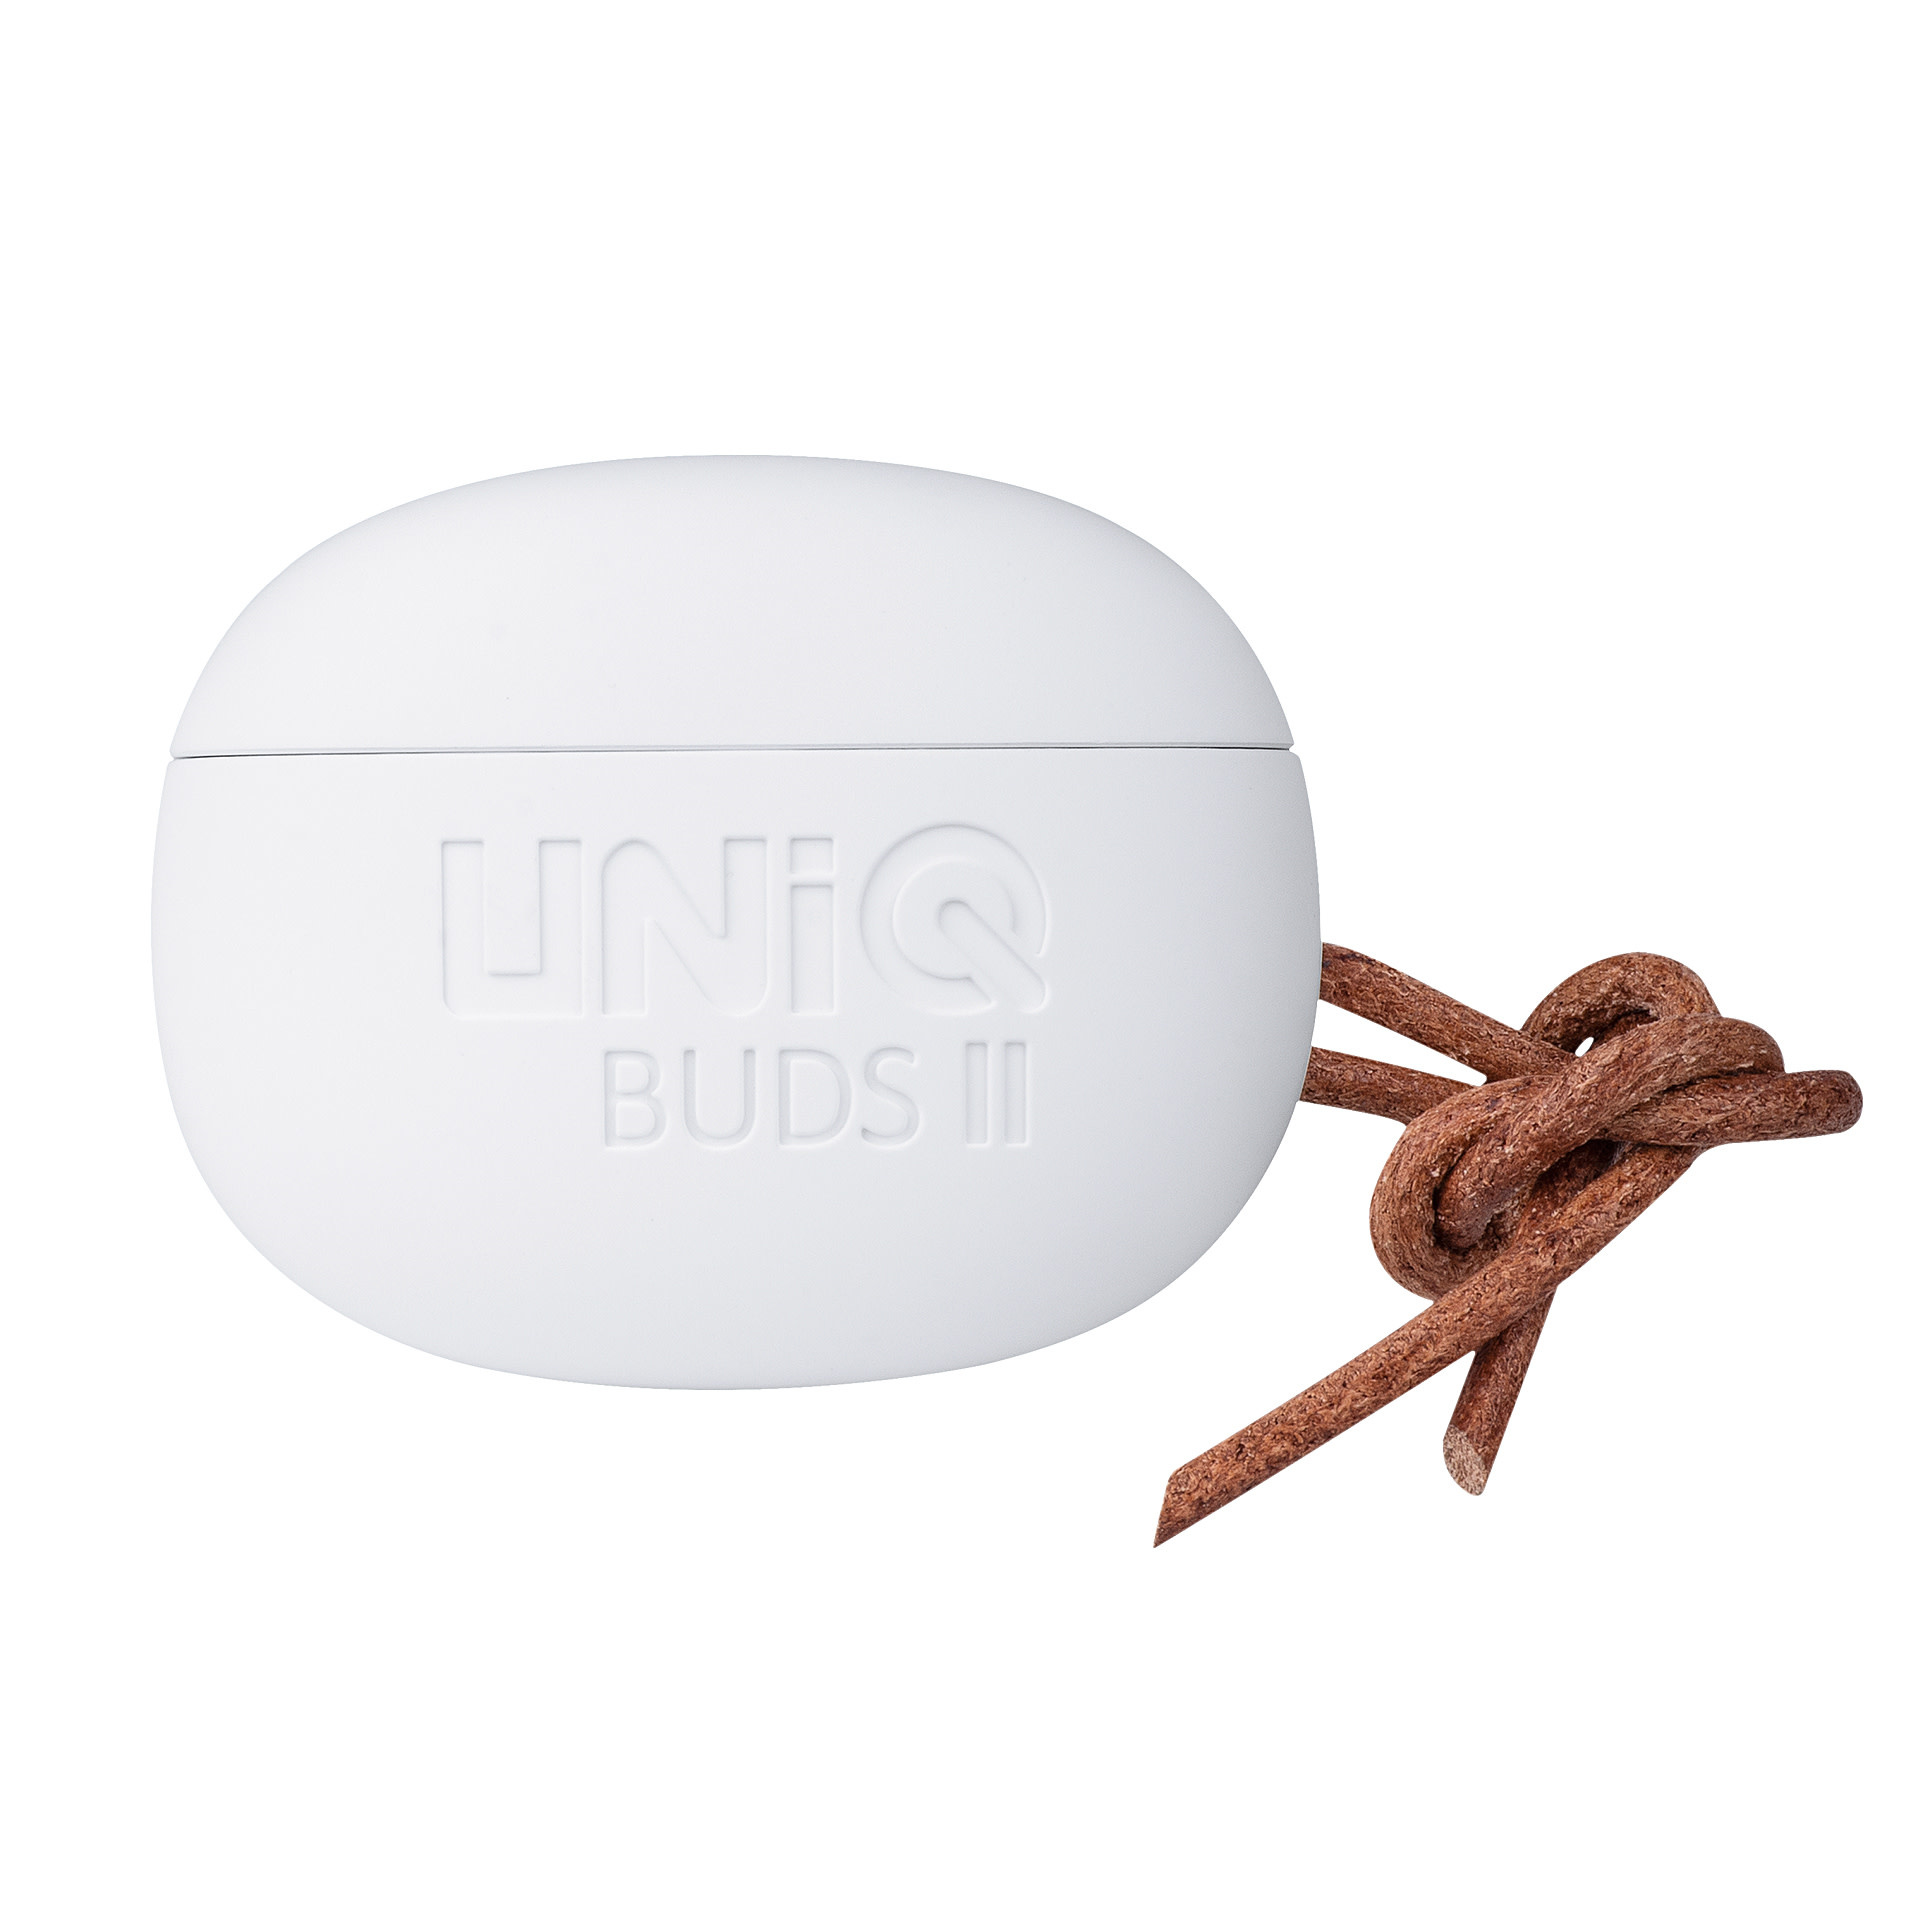 UNIQ Buds ll wireless TWS earphones töltőtokkal - Fehér